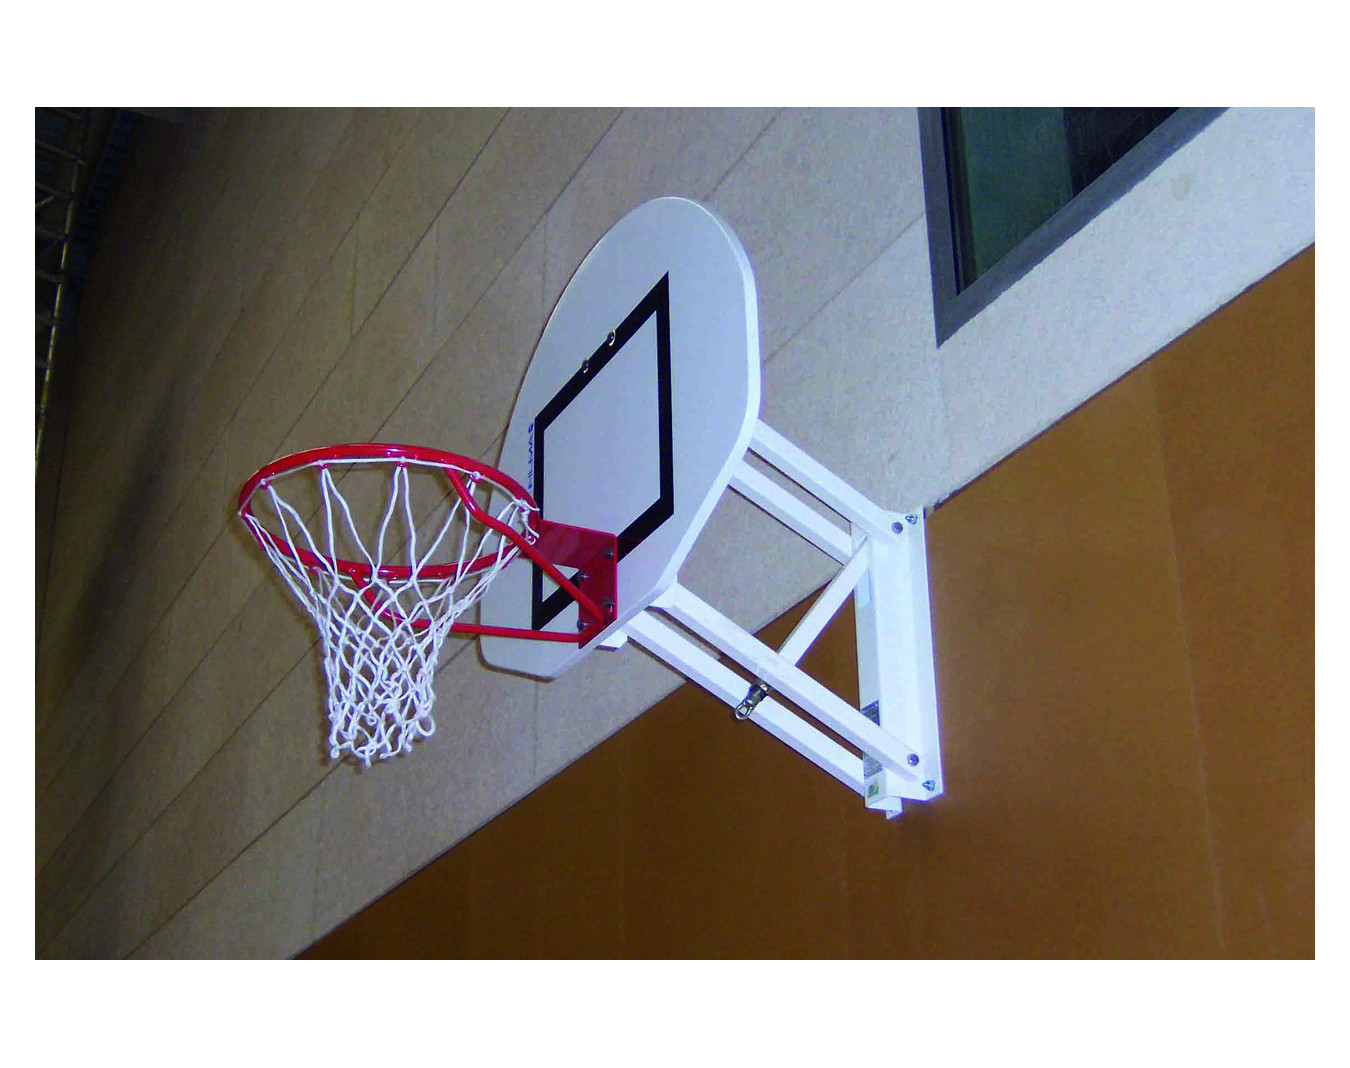 But de basket mural spécifique